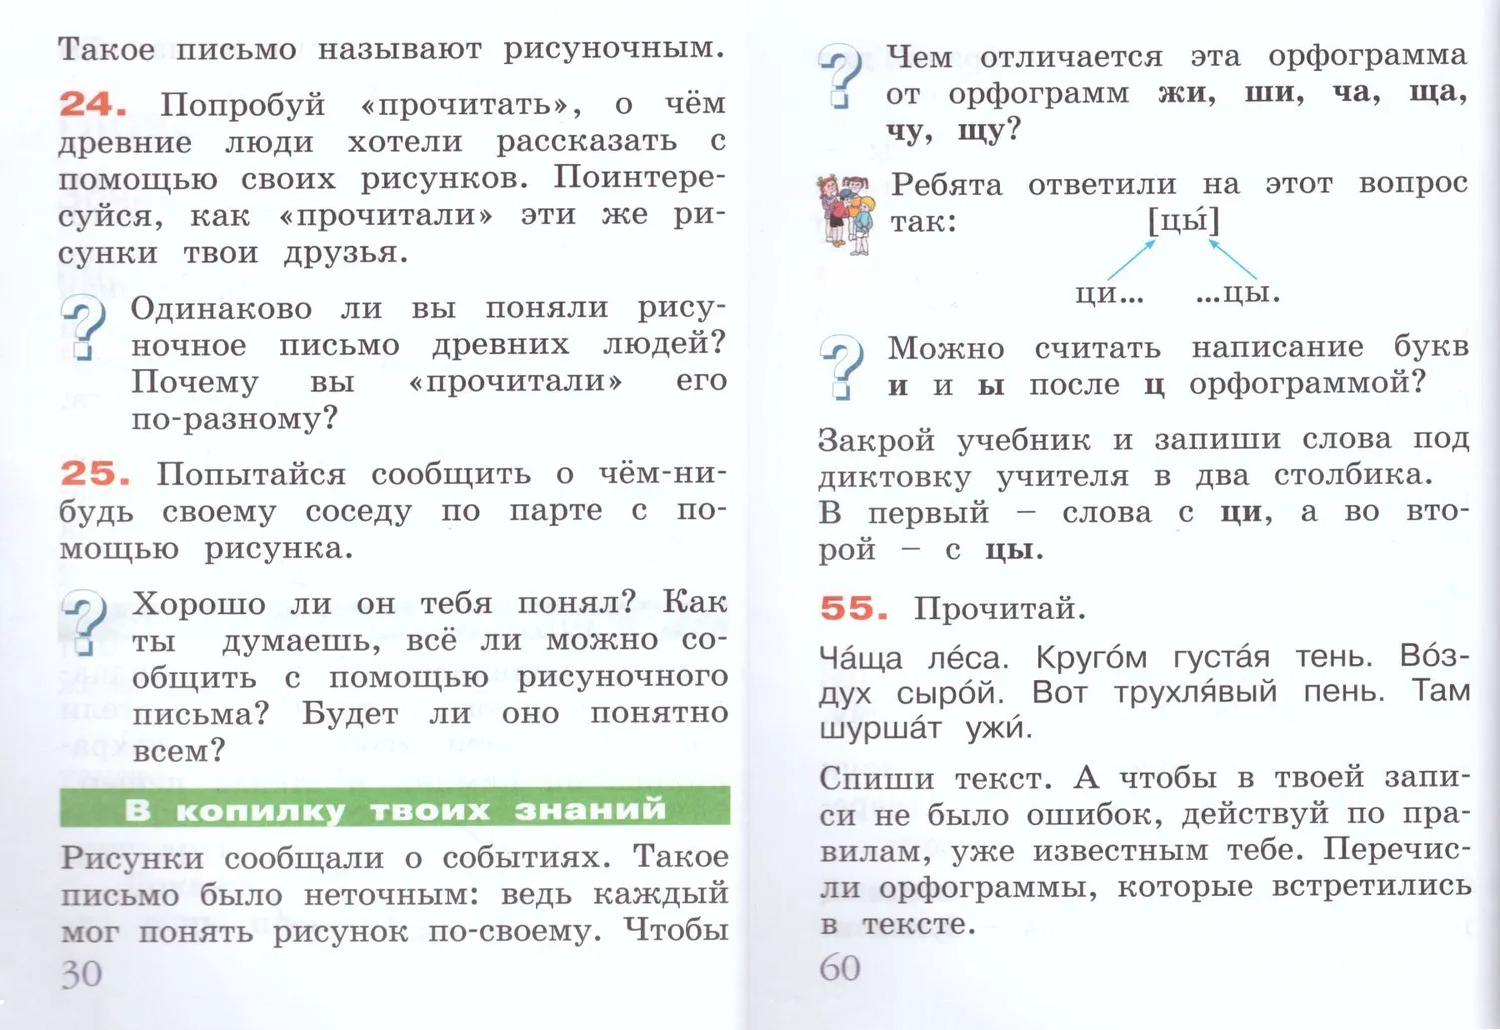 Примеры заданий из учебника русского языка для первого класса. Некоторые из них рассчитаны на совместную работу с другими детьми. Источник: ozon.ru